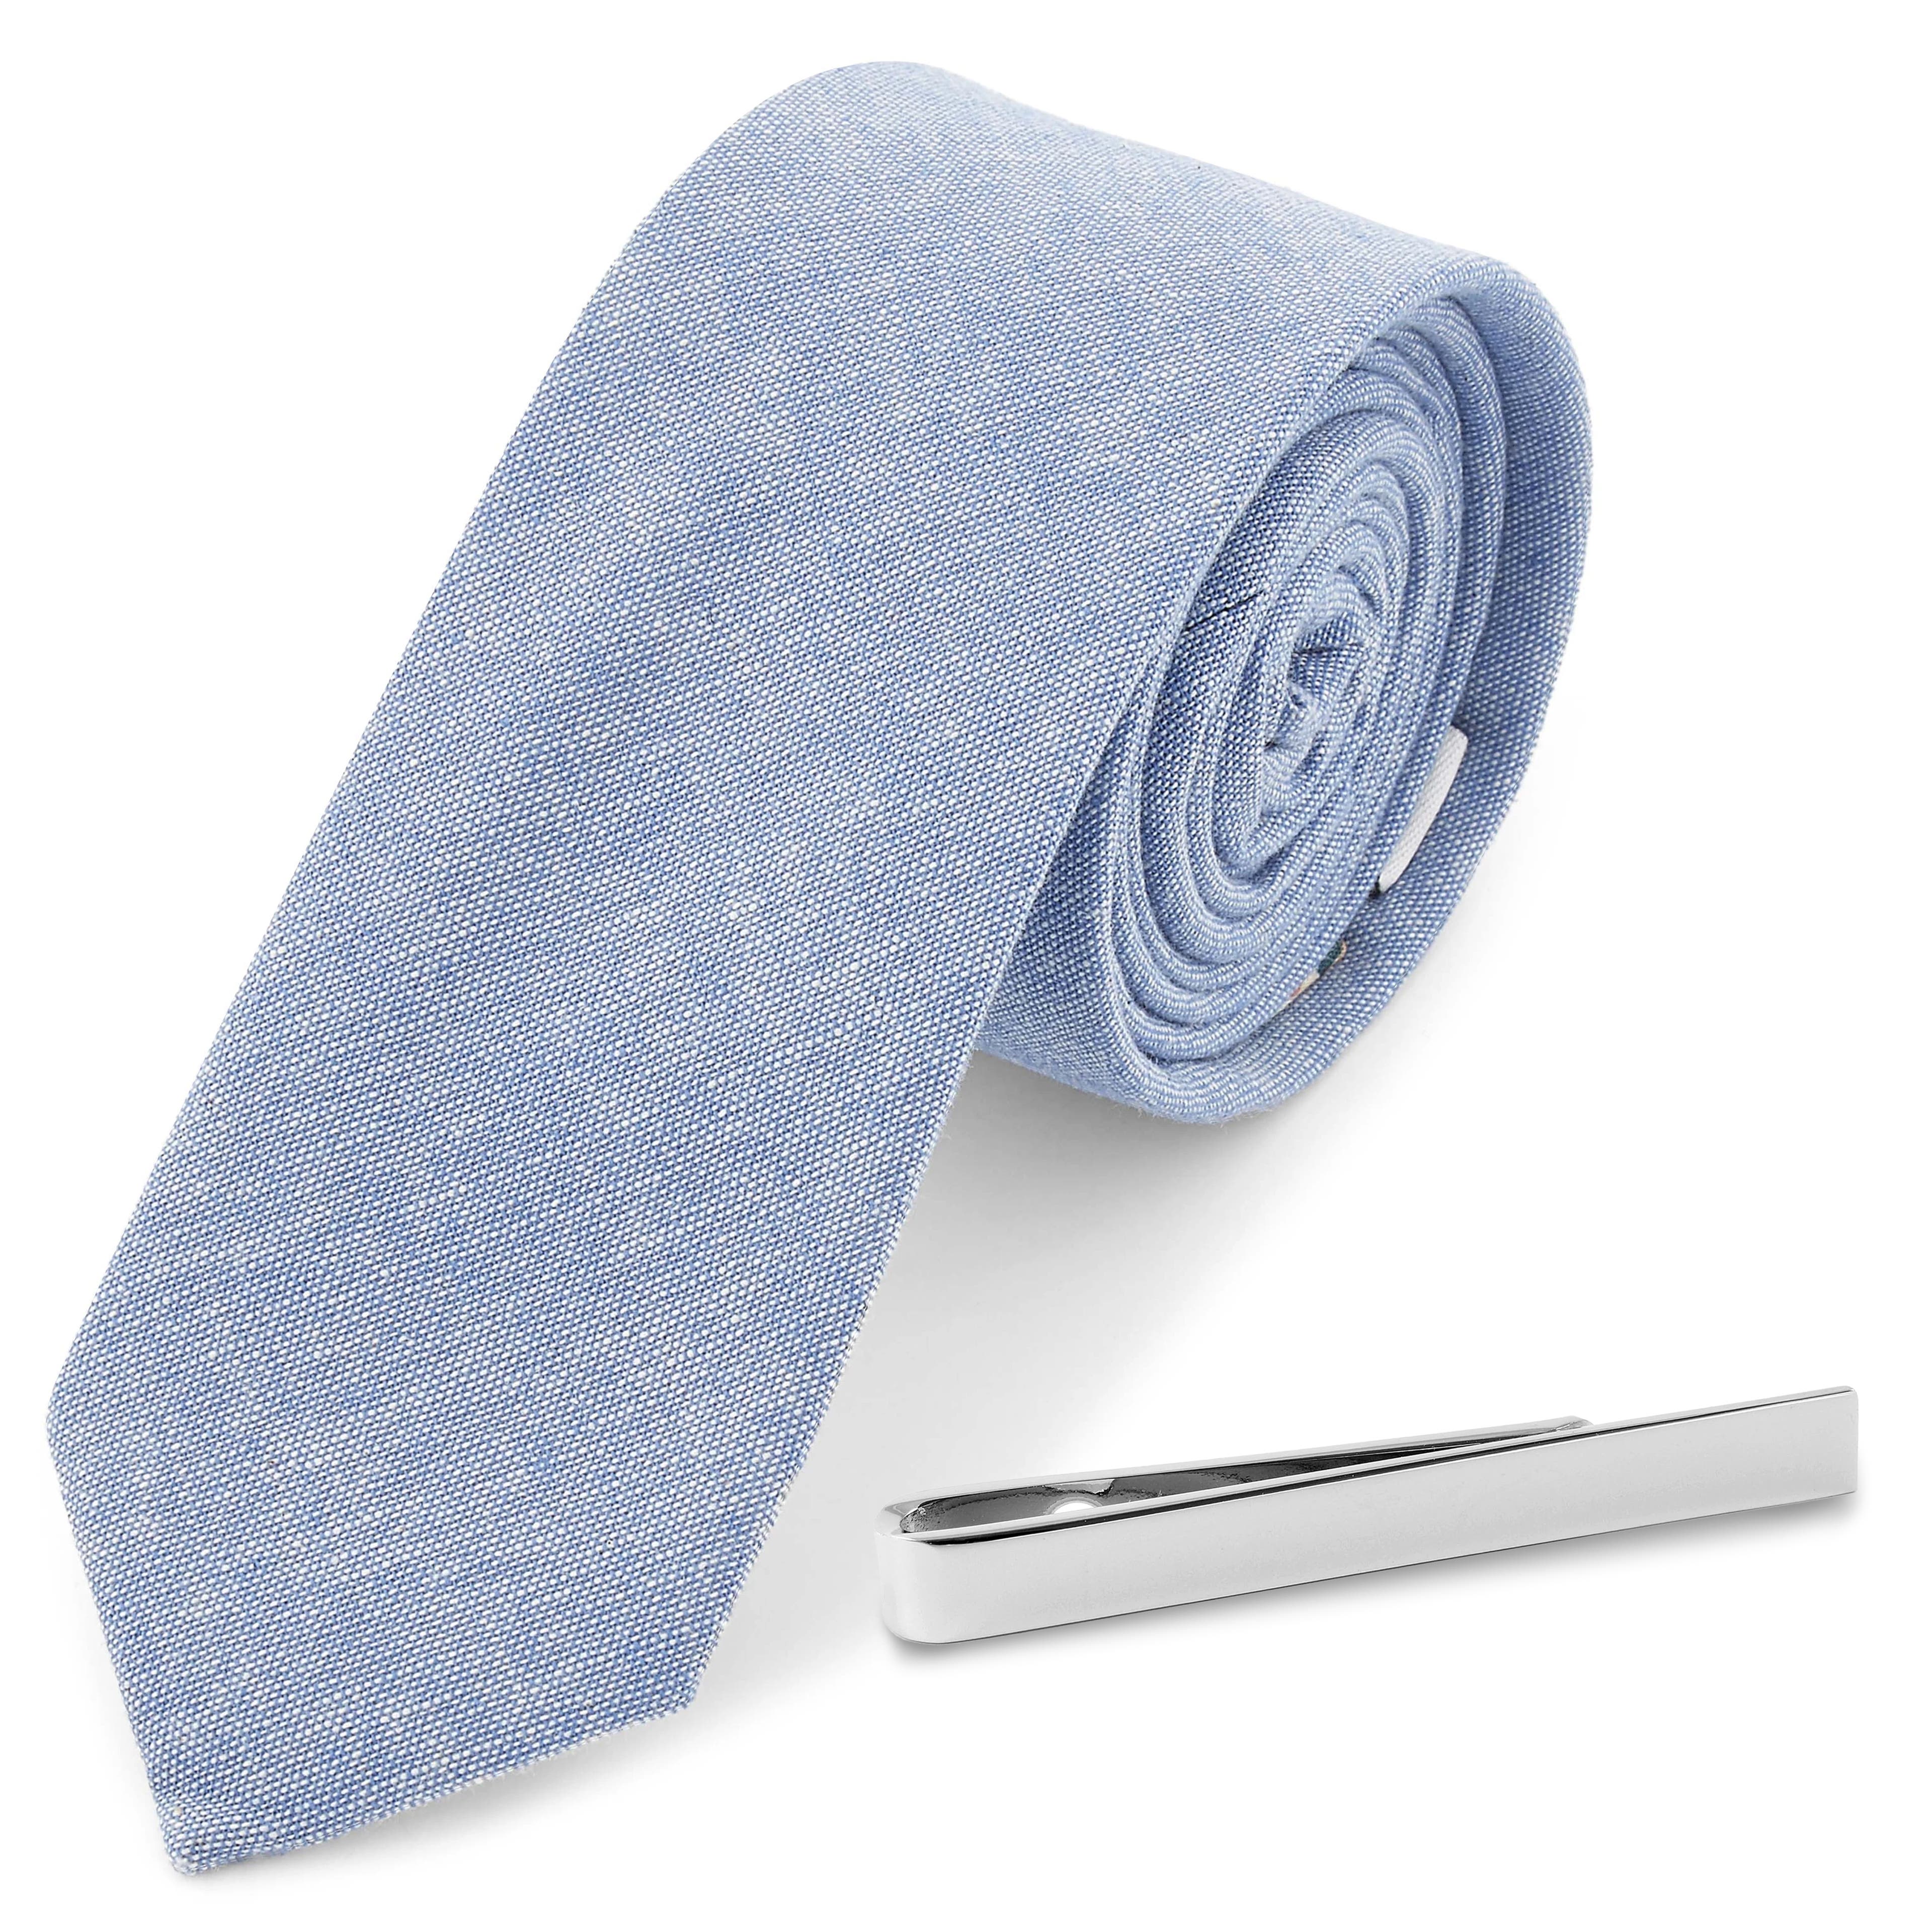 Hellblaue Krawatte und silberfarbenes Krawattenhalter-Set